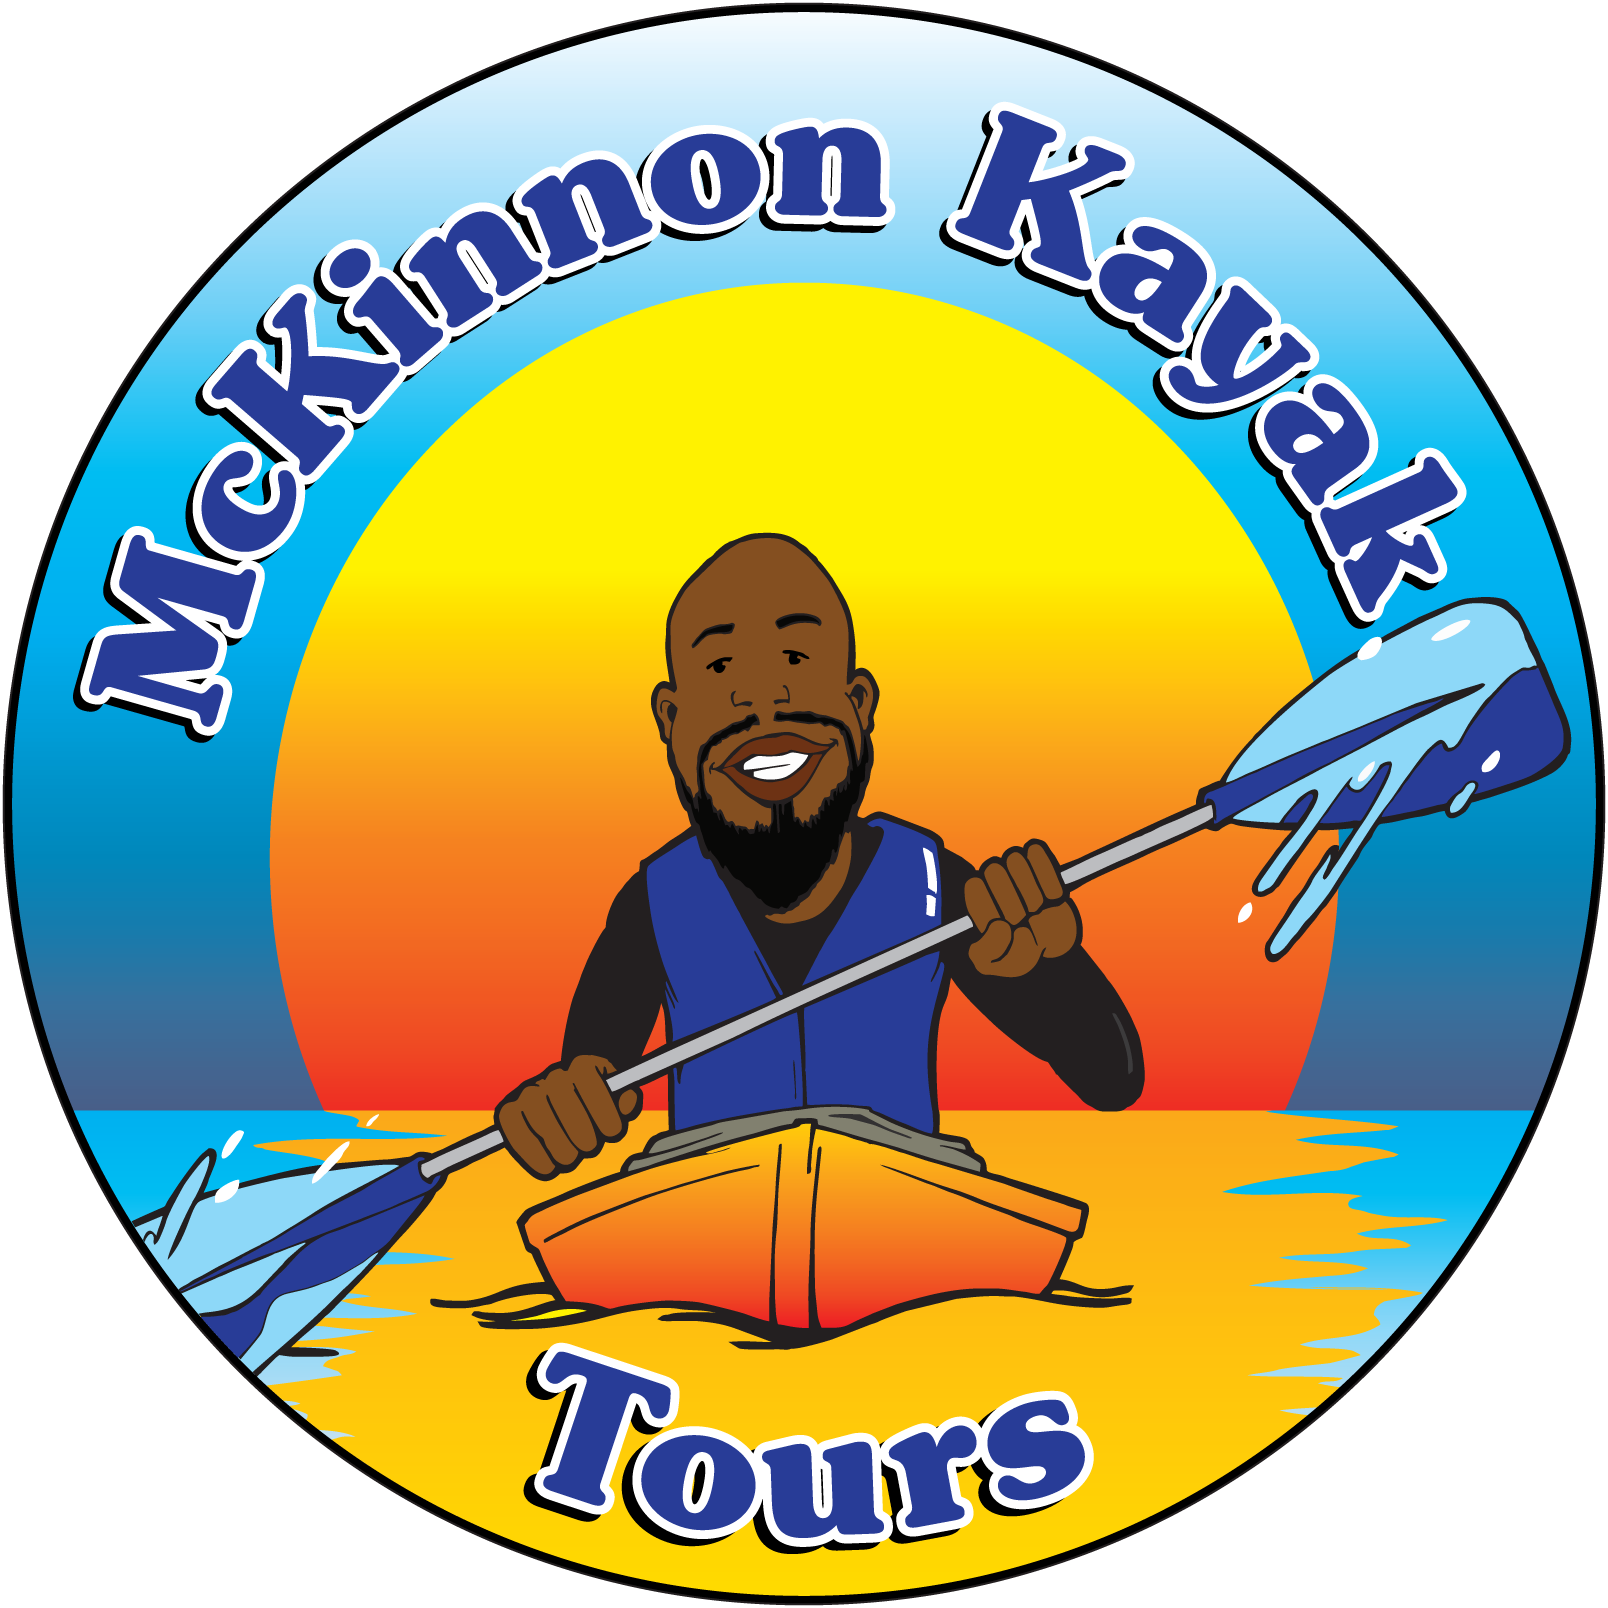 McKinnon Kayak Tours